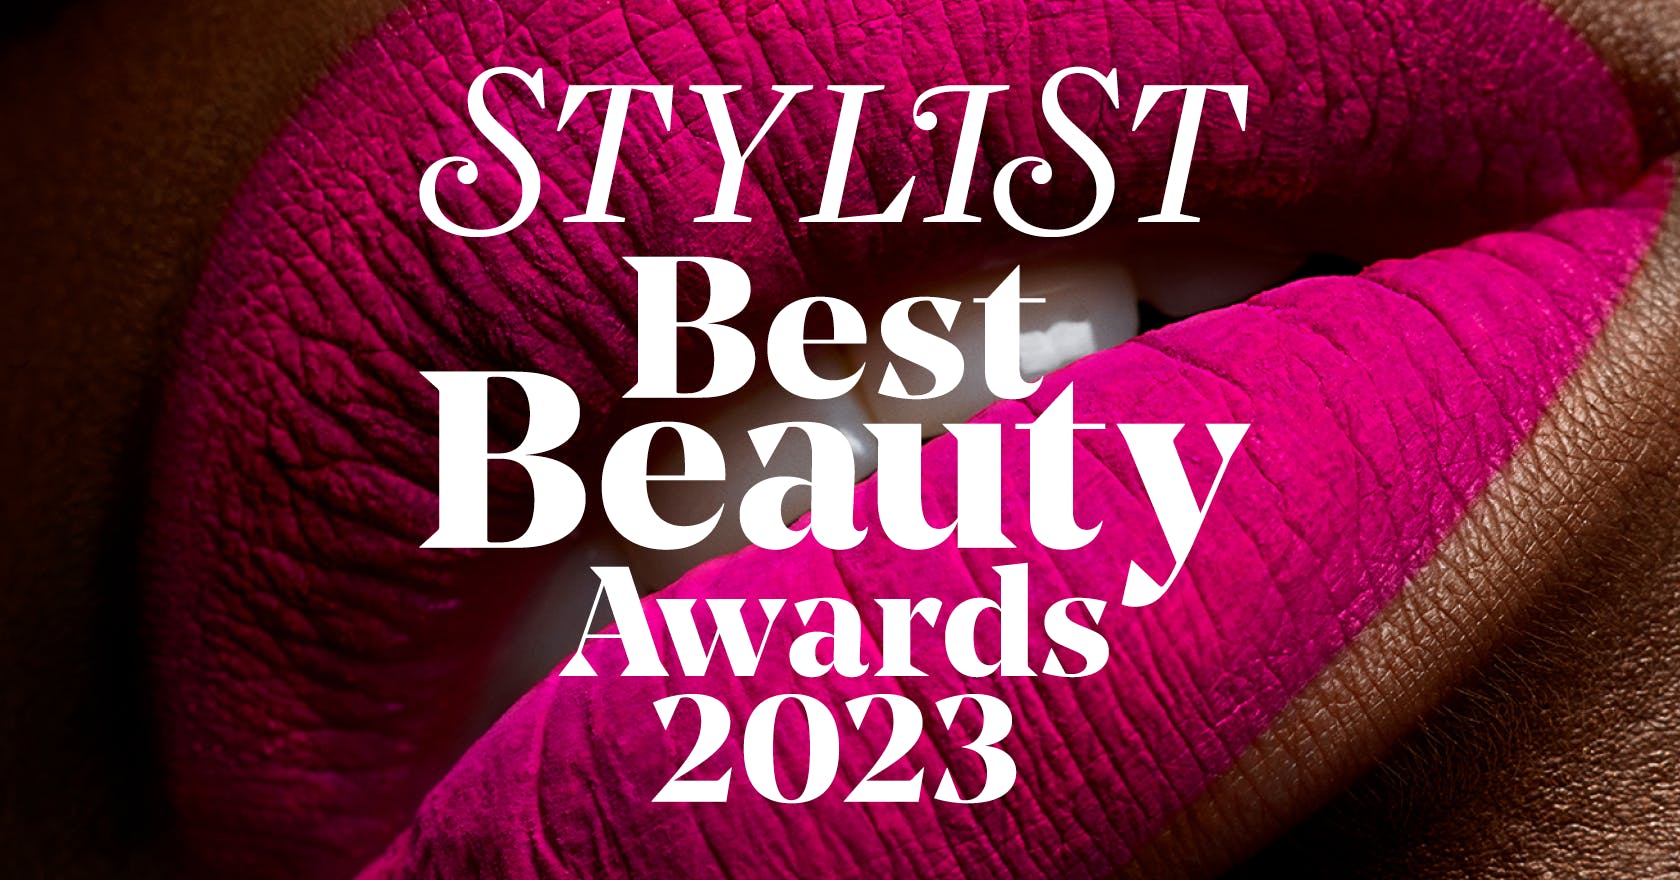 Stylist Best Beauty Awards 2023 Winners: Skin, Hair, Makeup, More